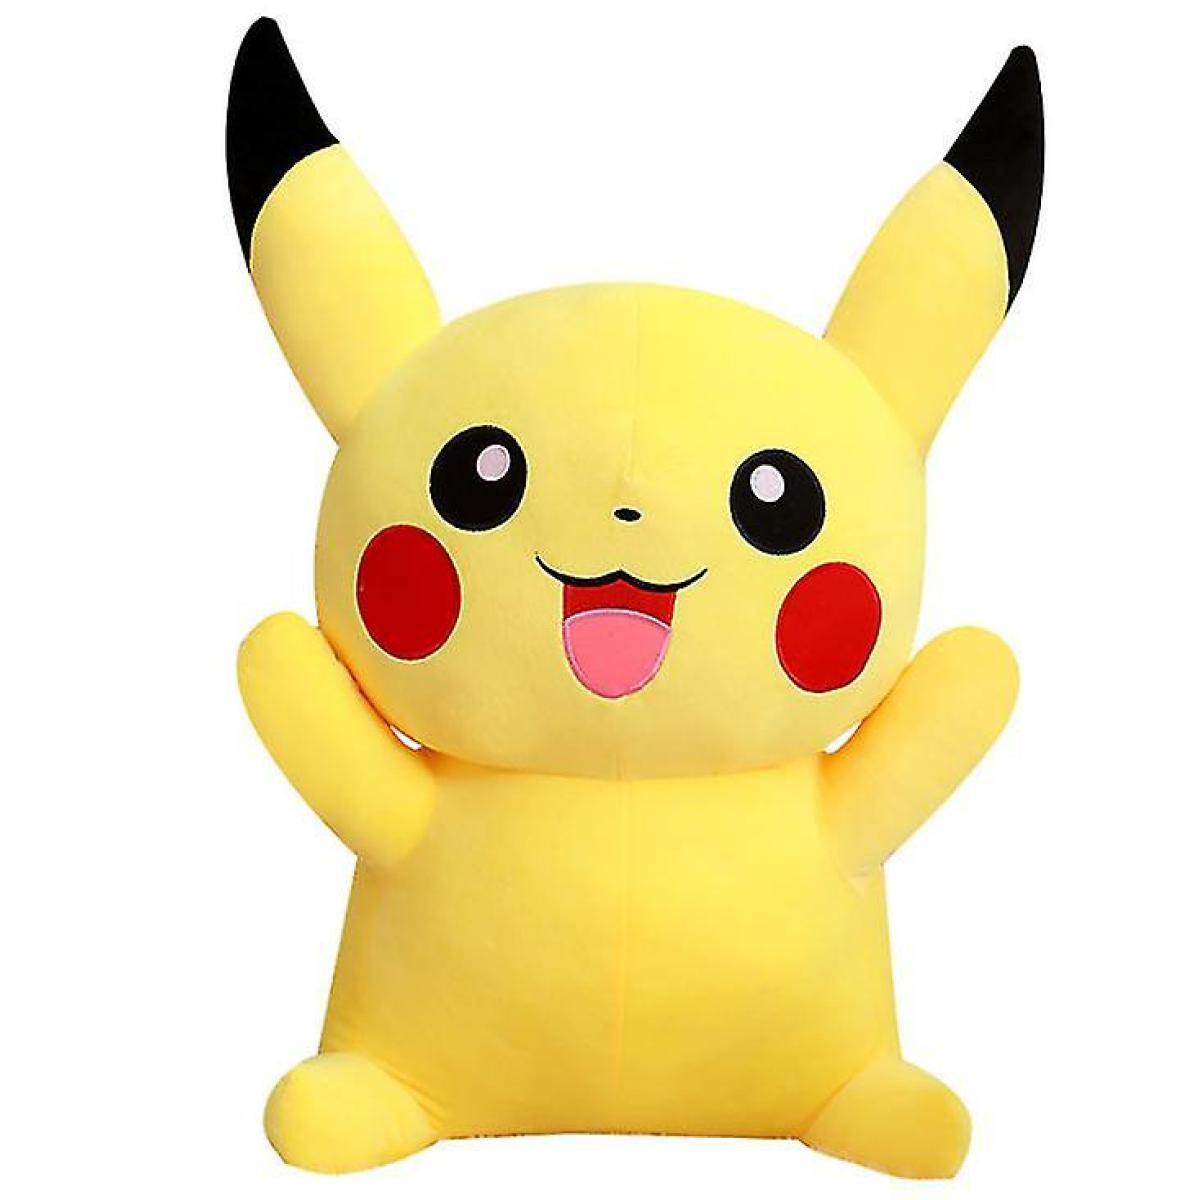 Universal - LBQ - Pokémon Pikachu peluche 25 cm jaune. - Doudous